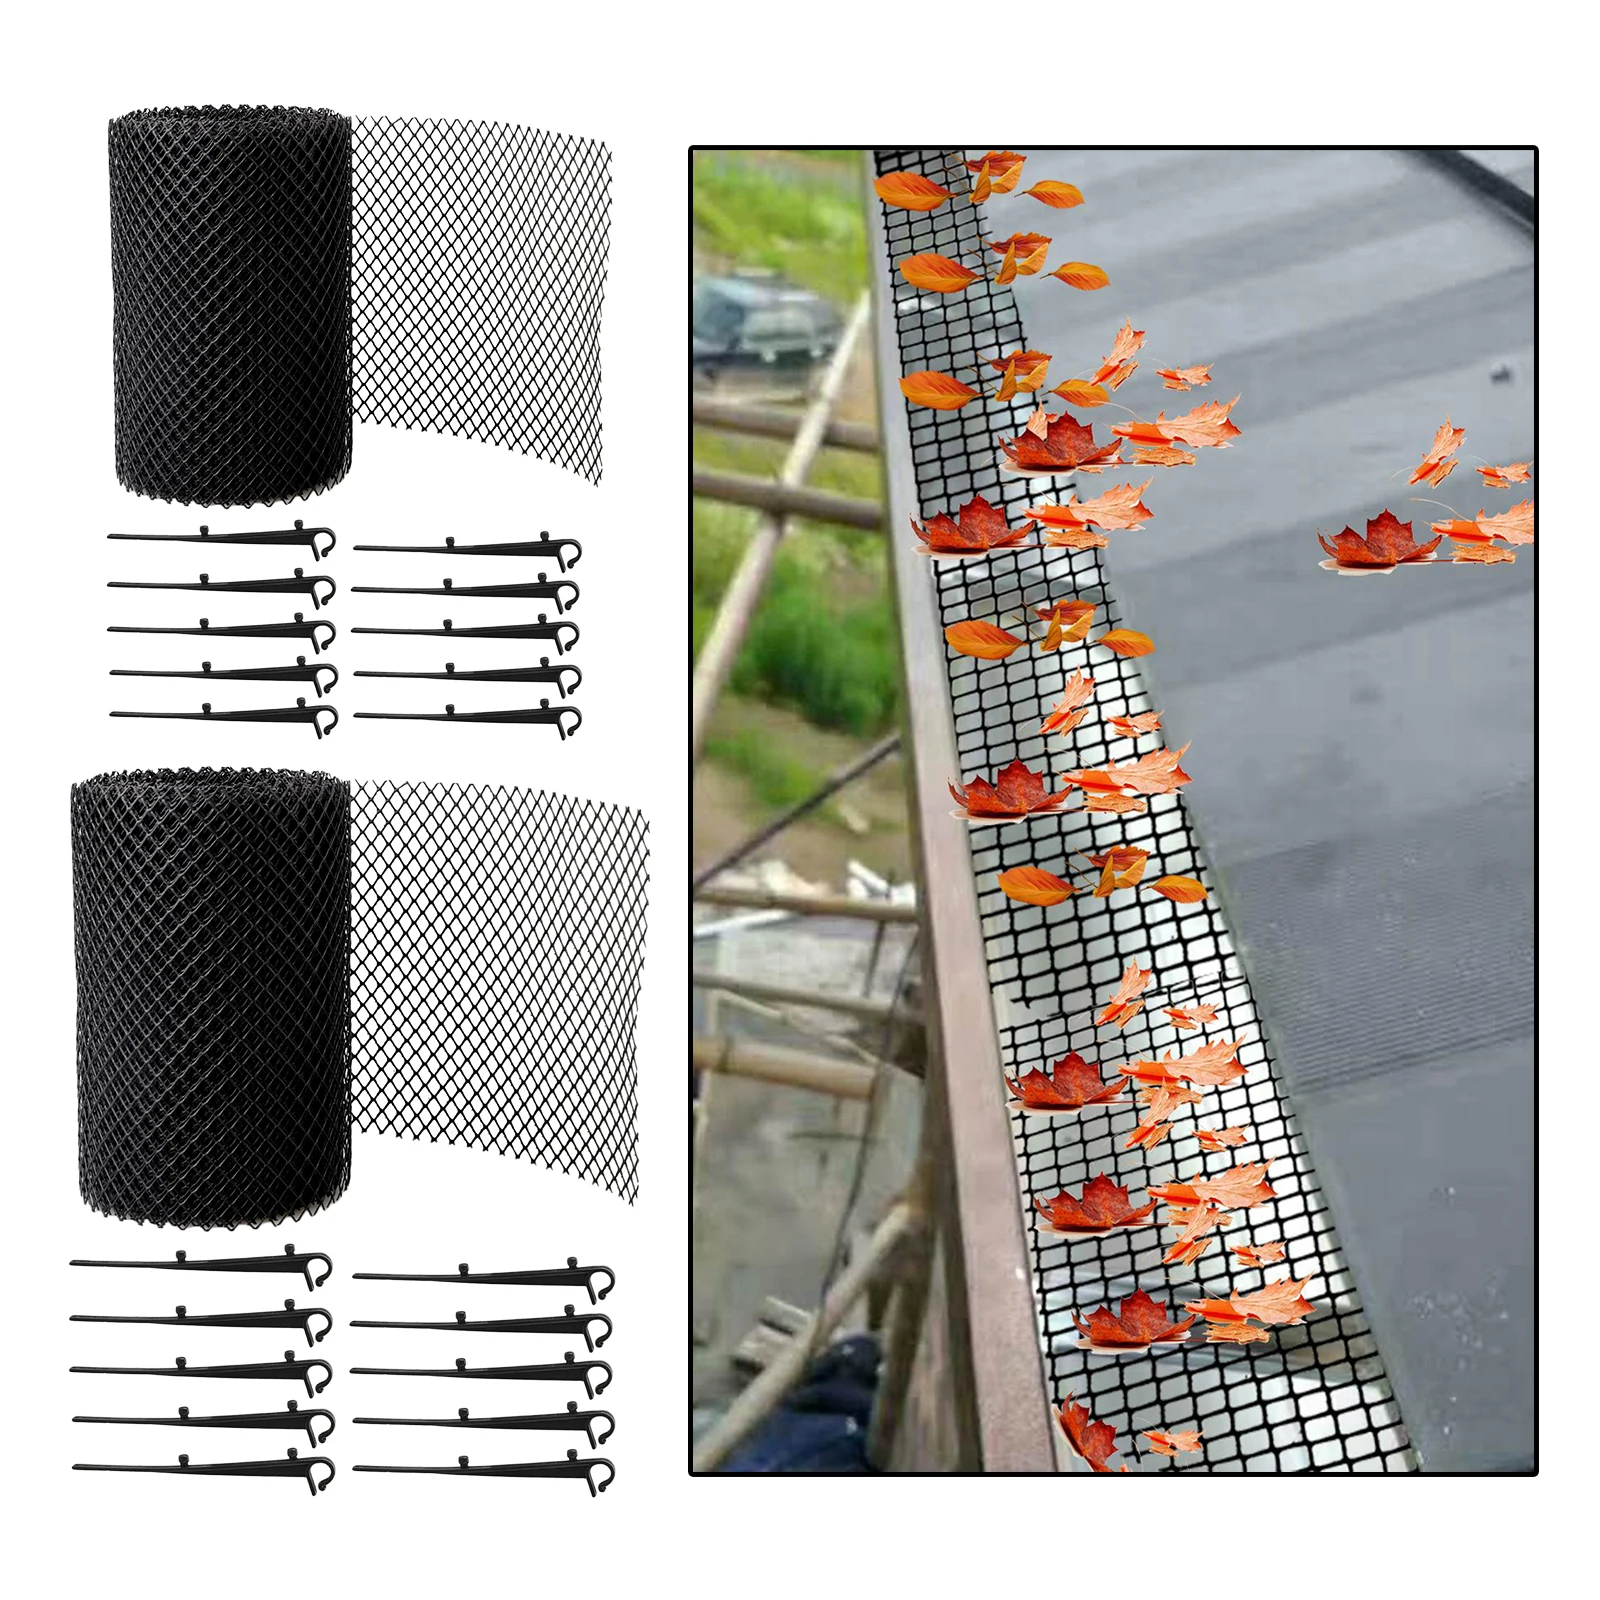 Roof Mesh - 10 Clip Hooks Einfach Zu Installieren Mesh to Debris Clogging